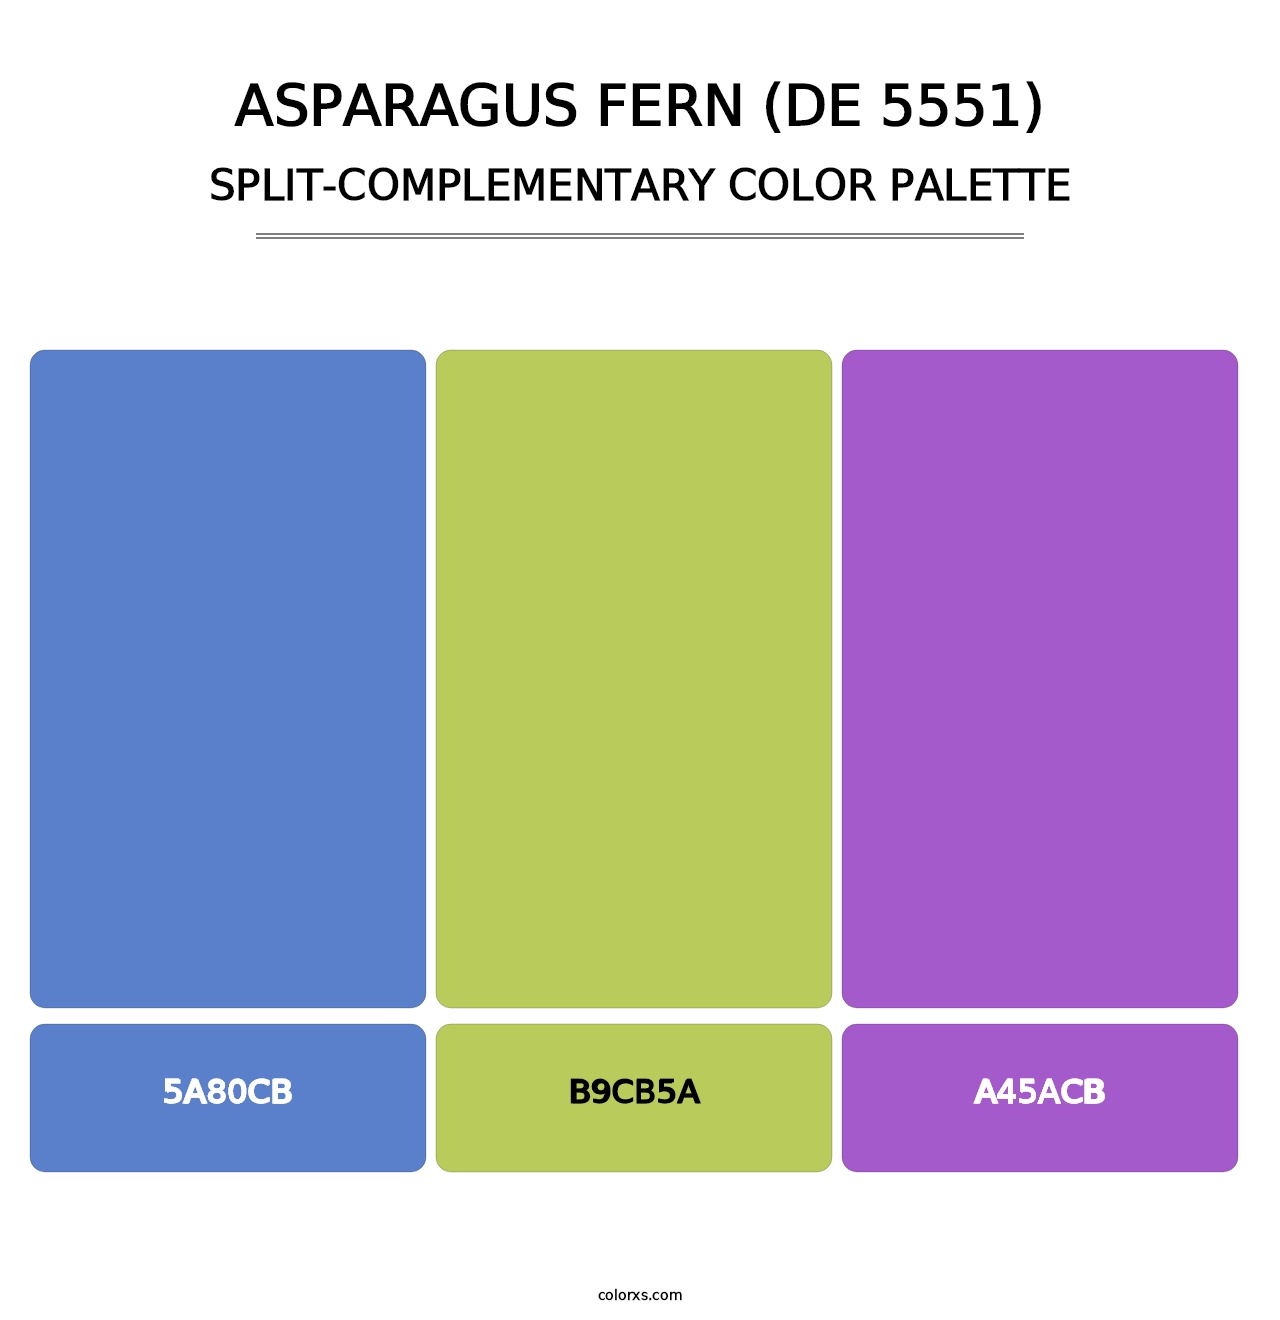 Asparagus Fern (DE 5551) - Split-Complementary Color Palette